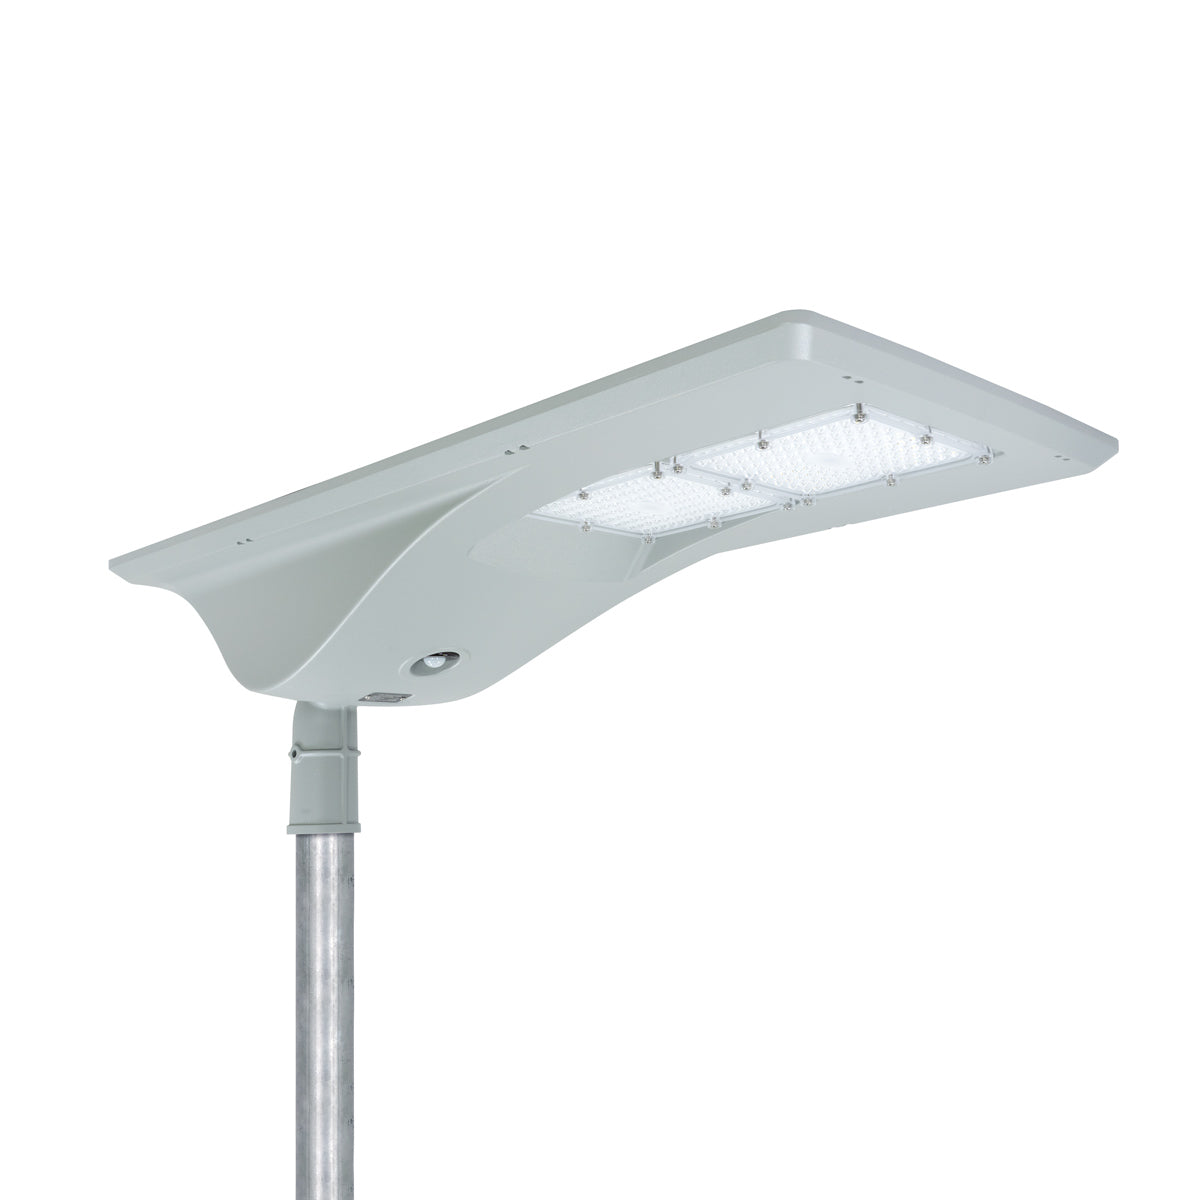 Solar LED Street Light - 60W - 12,000 Lumen - All-in-One Design